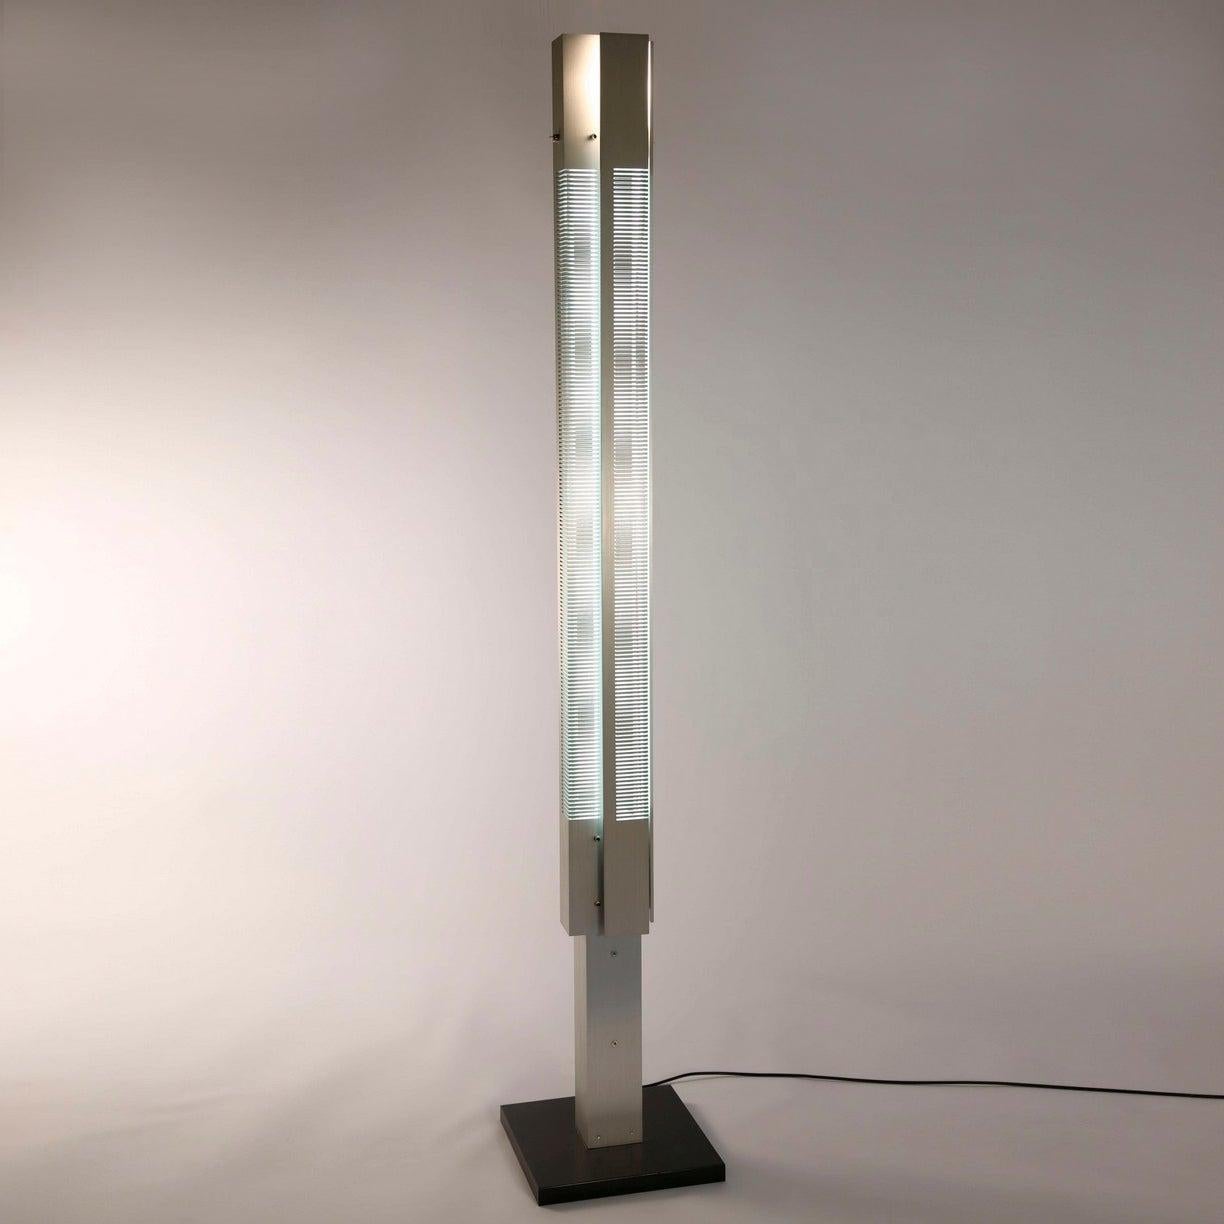 Stehleuchte Modell 'Medium Signal Column Lamp', entworfen von Serge Mouille im Jahr 1962.

Hergestellt von Editions Serge Mouille in Frankreich. Die Herstellung der Lampen, Wandleuchten und Stehlampen erfolgt in handwerklicher Weise mit den gleichen